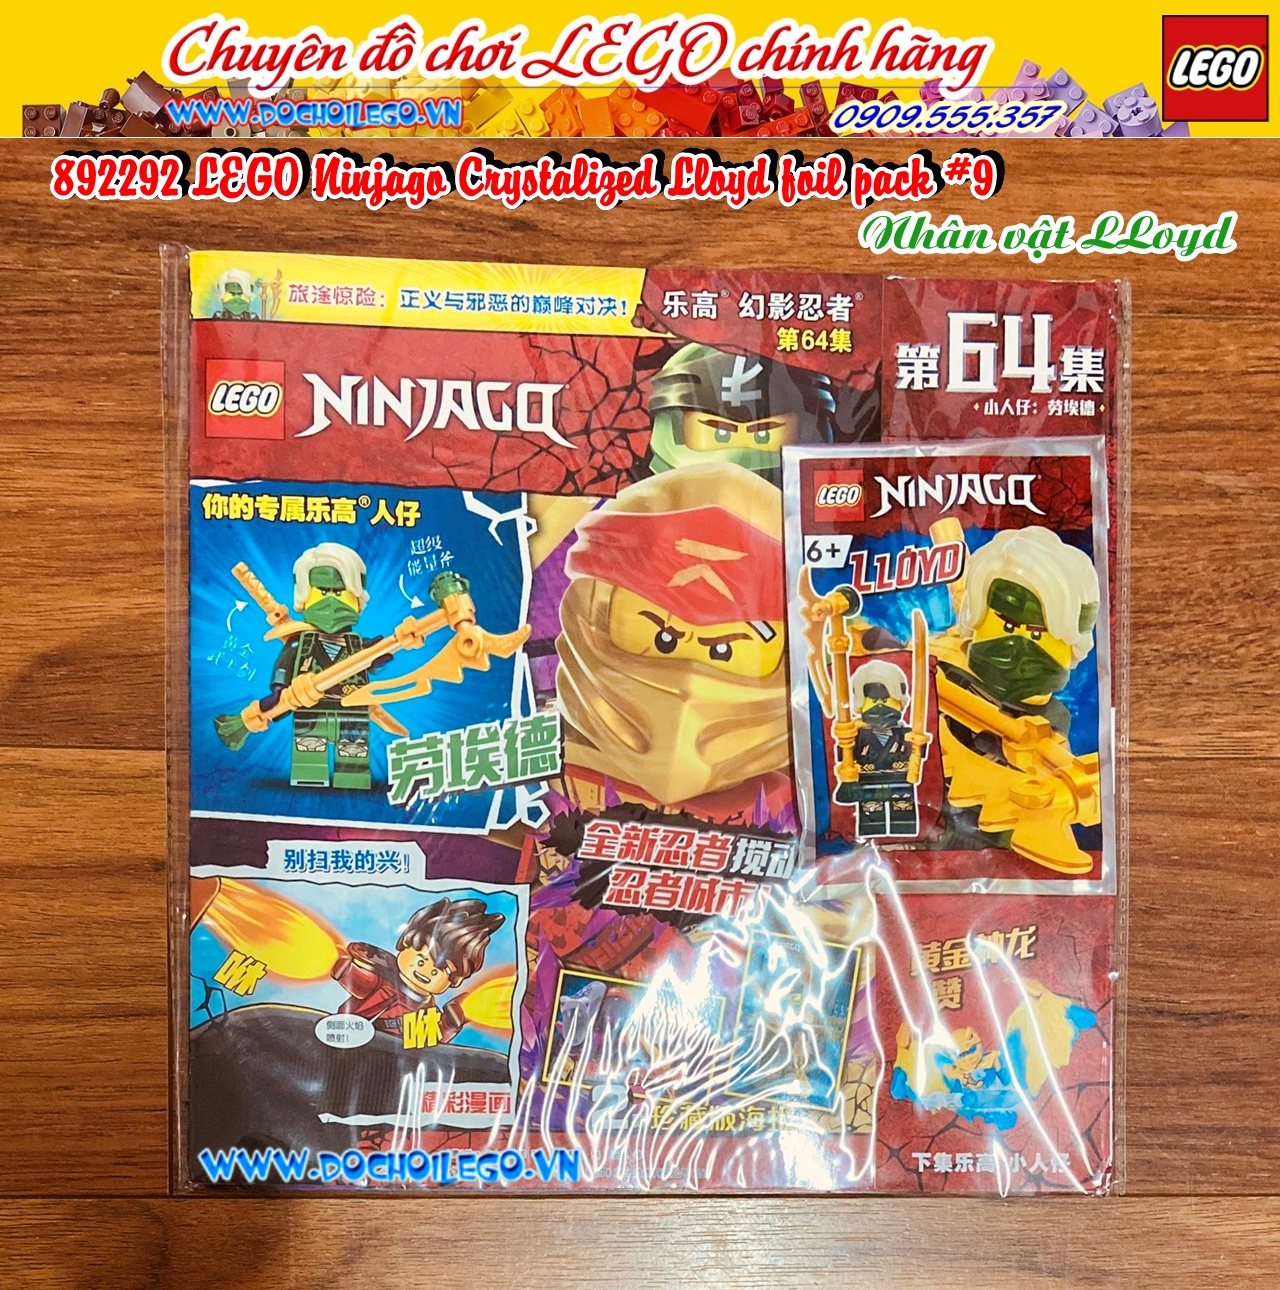 892292 LEGO Ninjago Crystalized Lloyd- Nhân vật Lloyd - Tạp chí LEGO Ninjago có kèm Minifigures - Phiên bản tiếng Trung - Hàng chính hãng LEGO